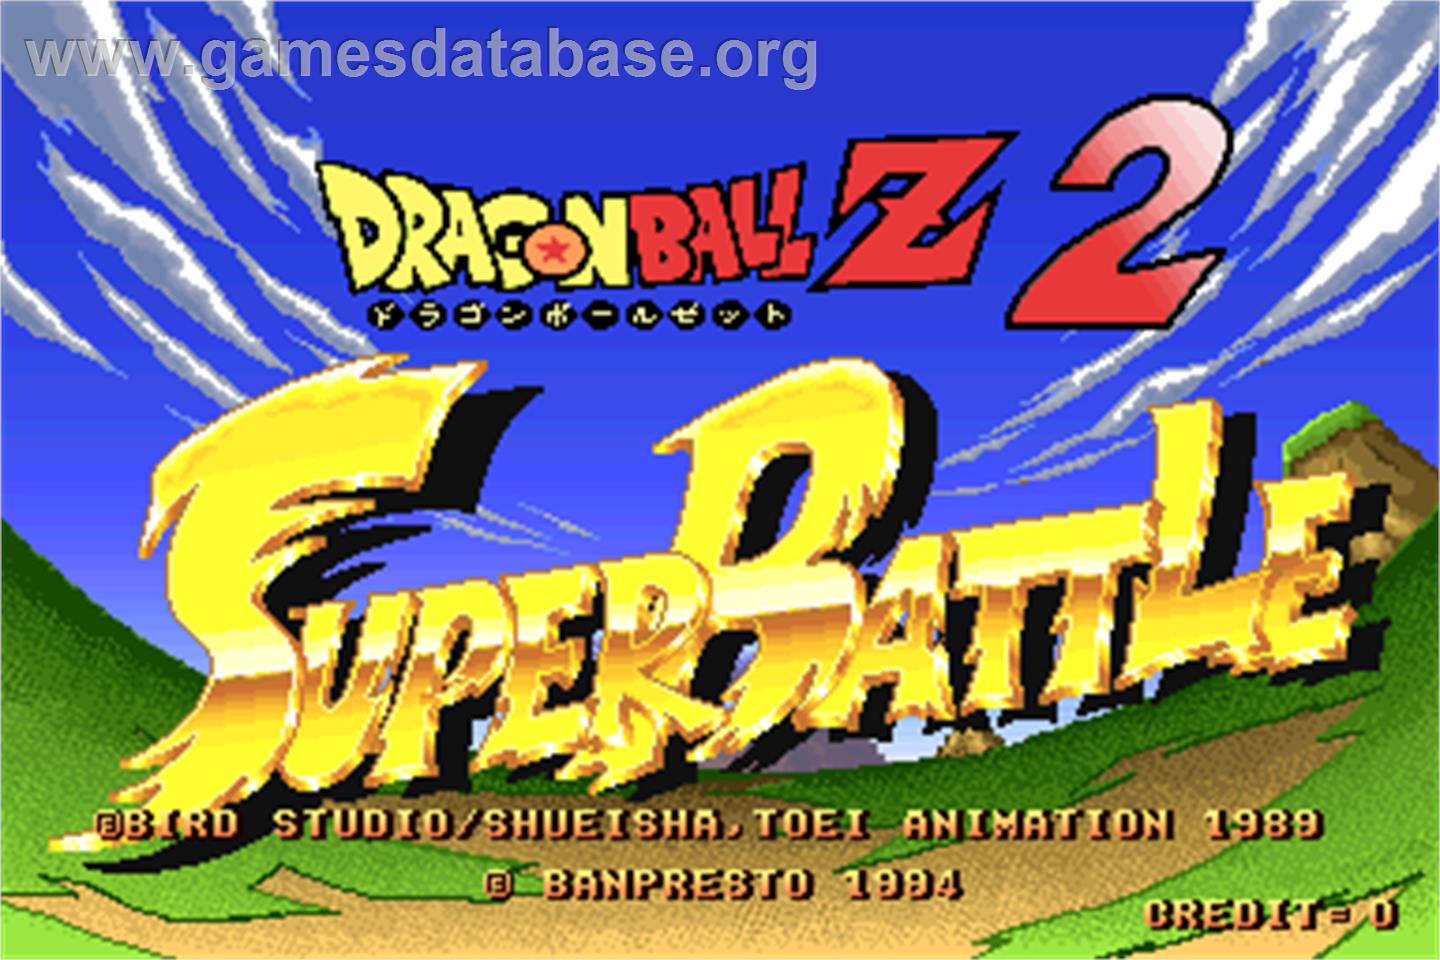 Dragonball Z 2 - Super Battle - Arcade - Artwork - Title Screen